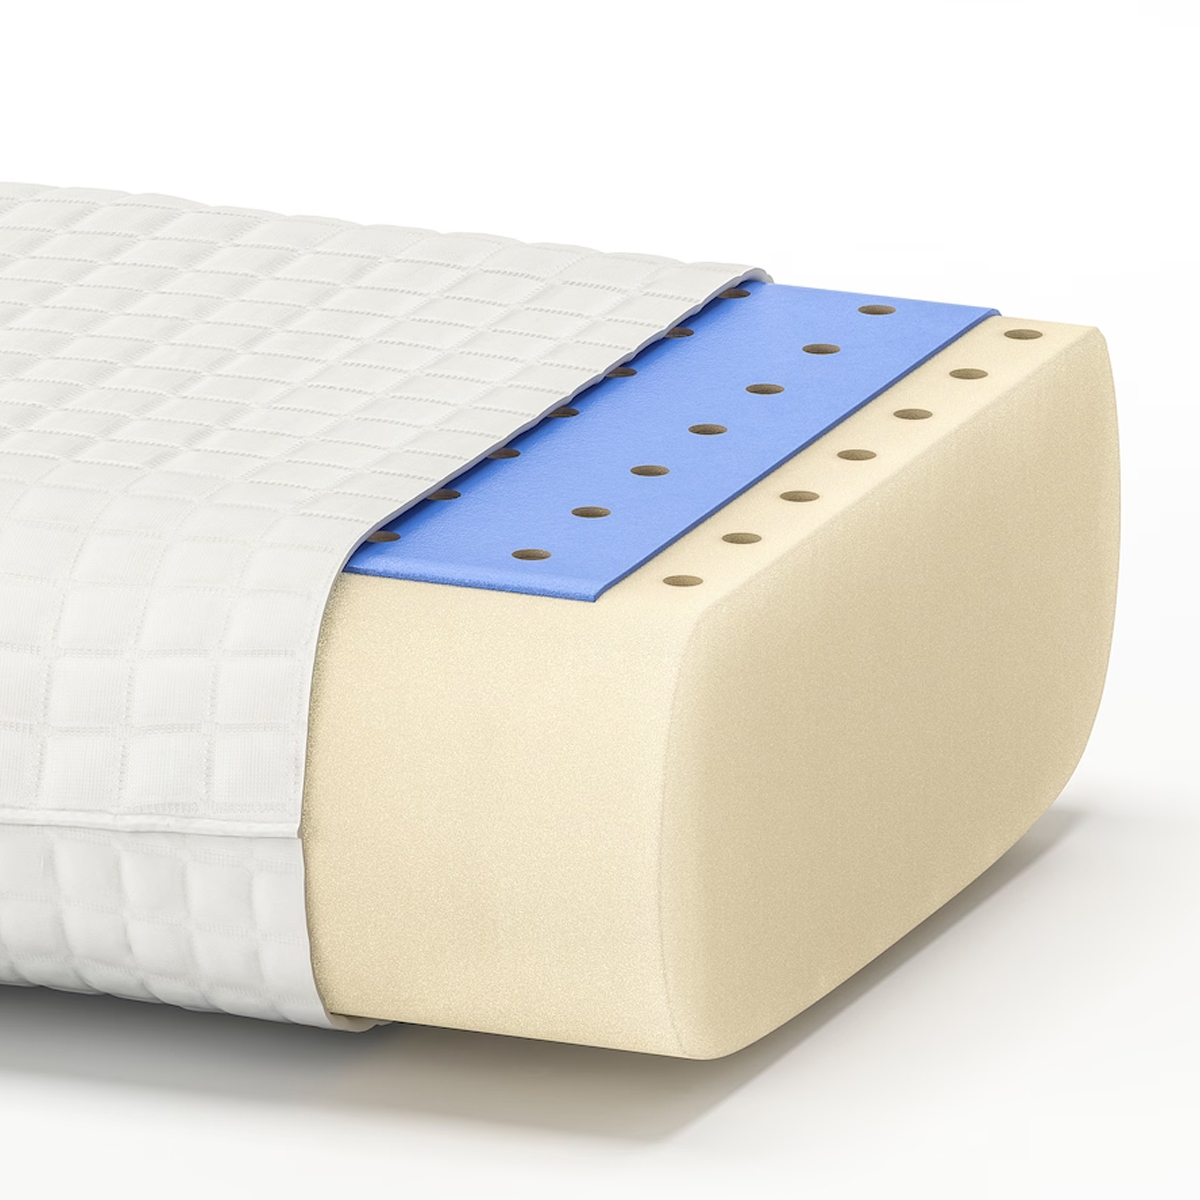 KLUBBSPORRE ergonomski jastuk, bočno/na leđima, 44x56 cm